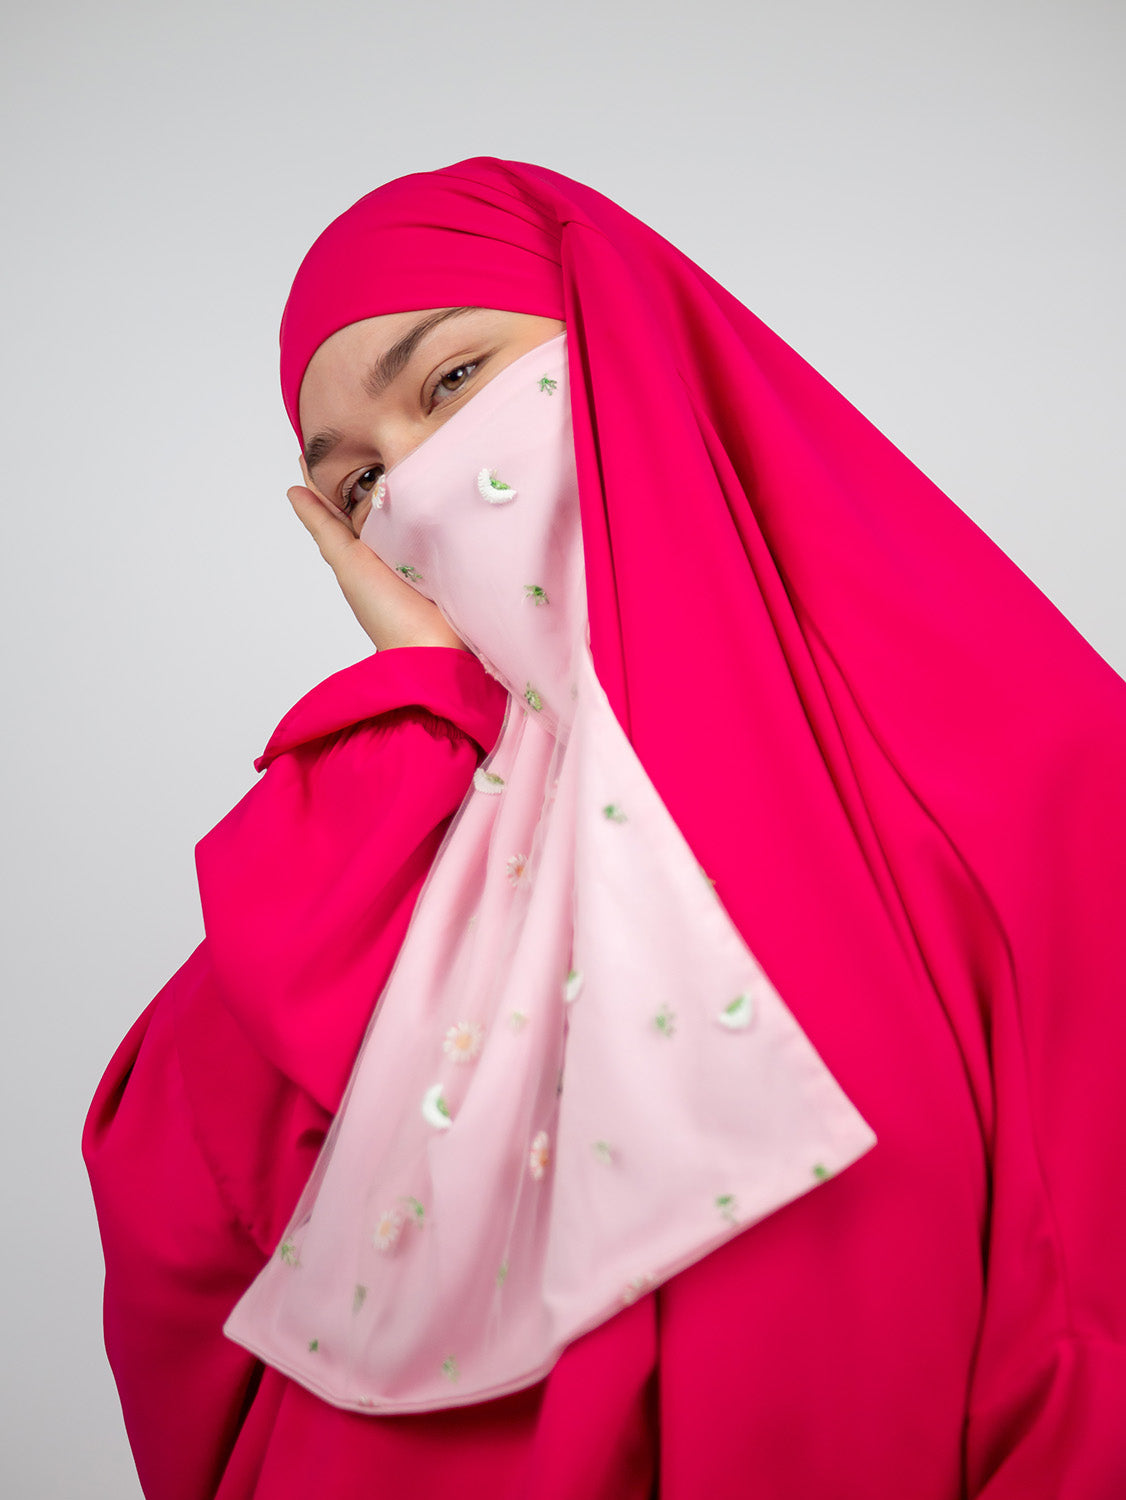 Diadem Chiffon Niqab, Princess Dream PRE ORDER